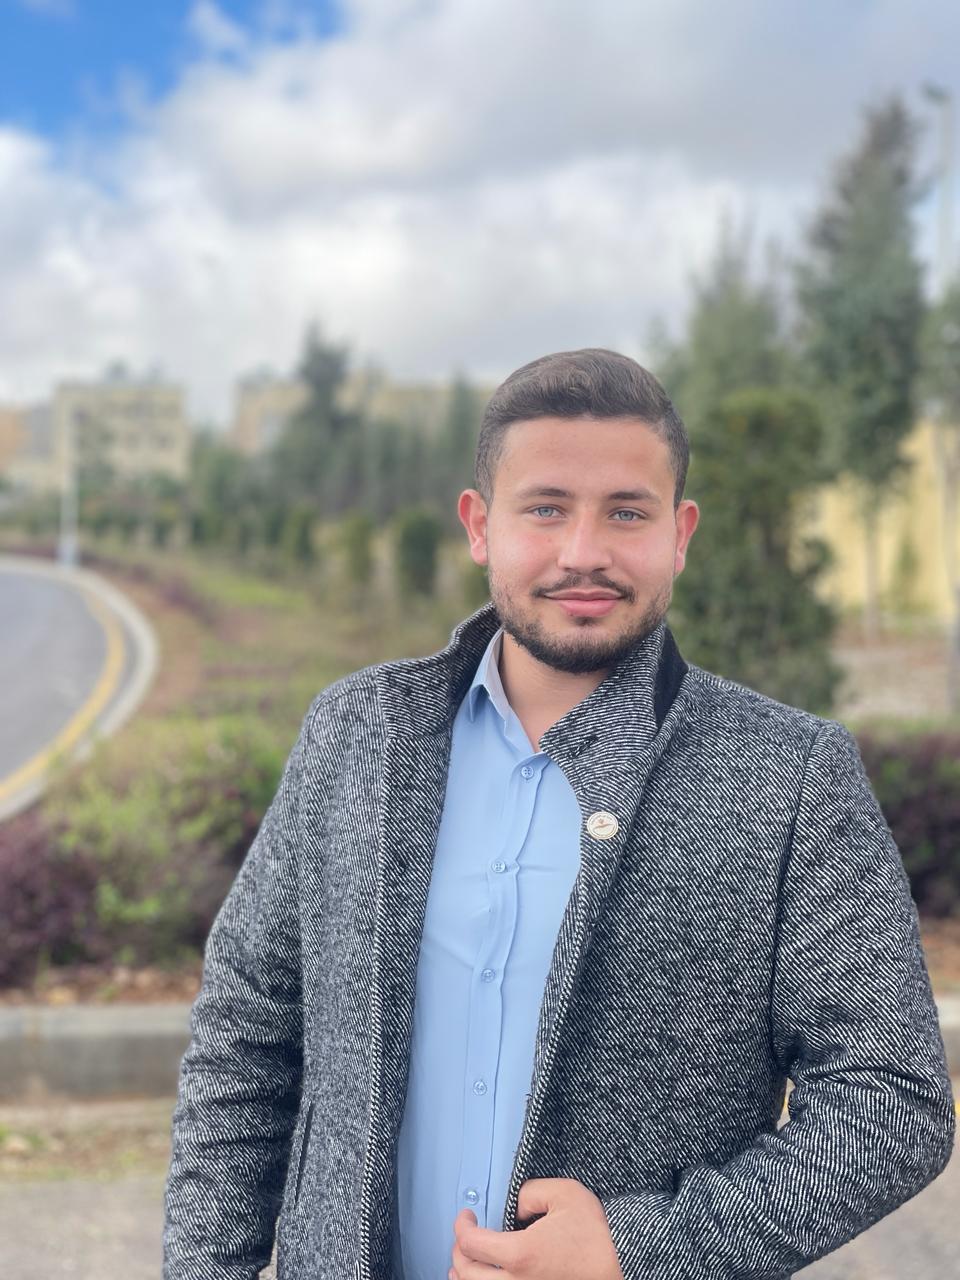 الطالب عبادة عمر الربيع  يخوض انتخابات مجلس الطلبة في جامعة جرش